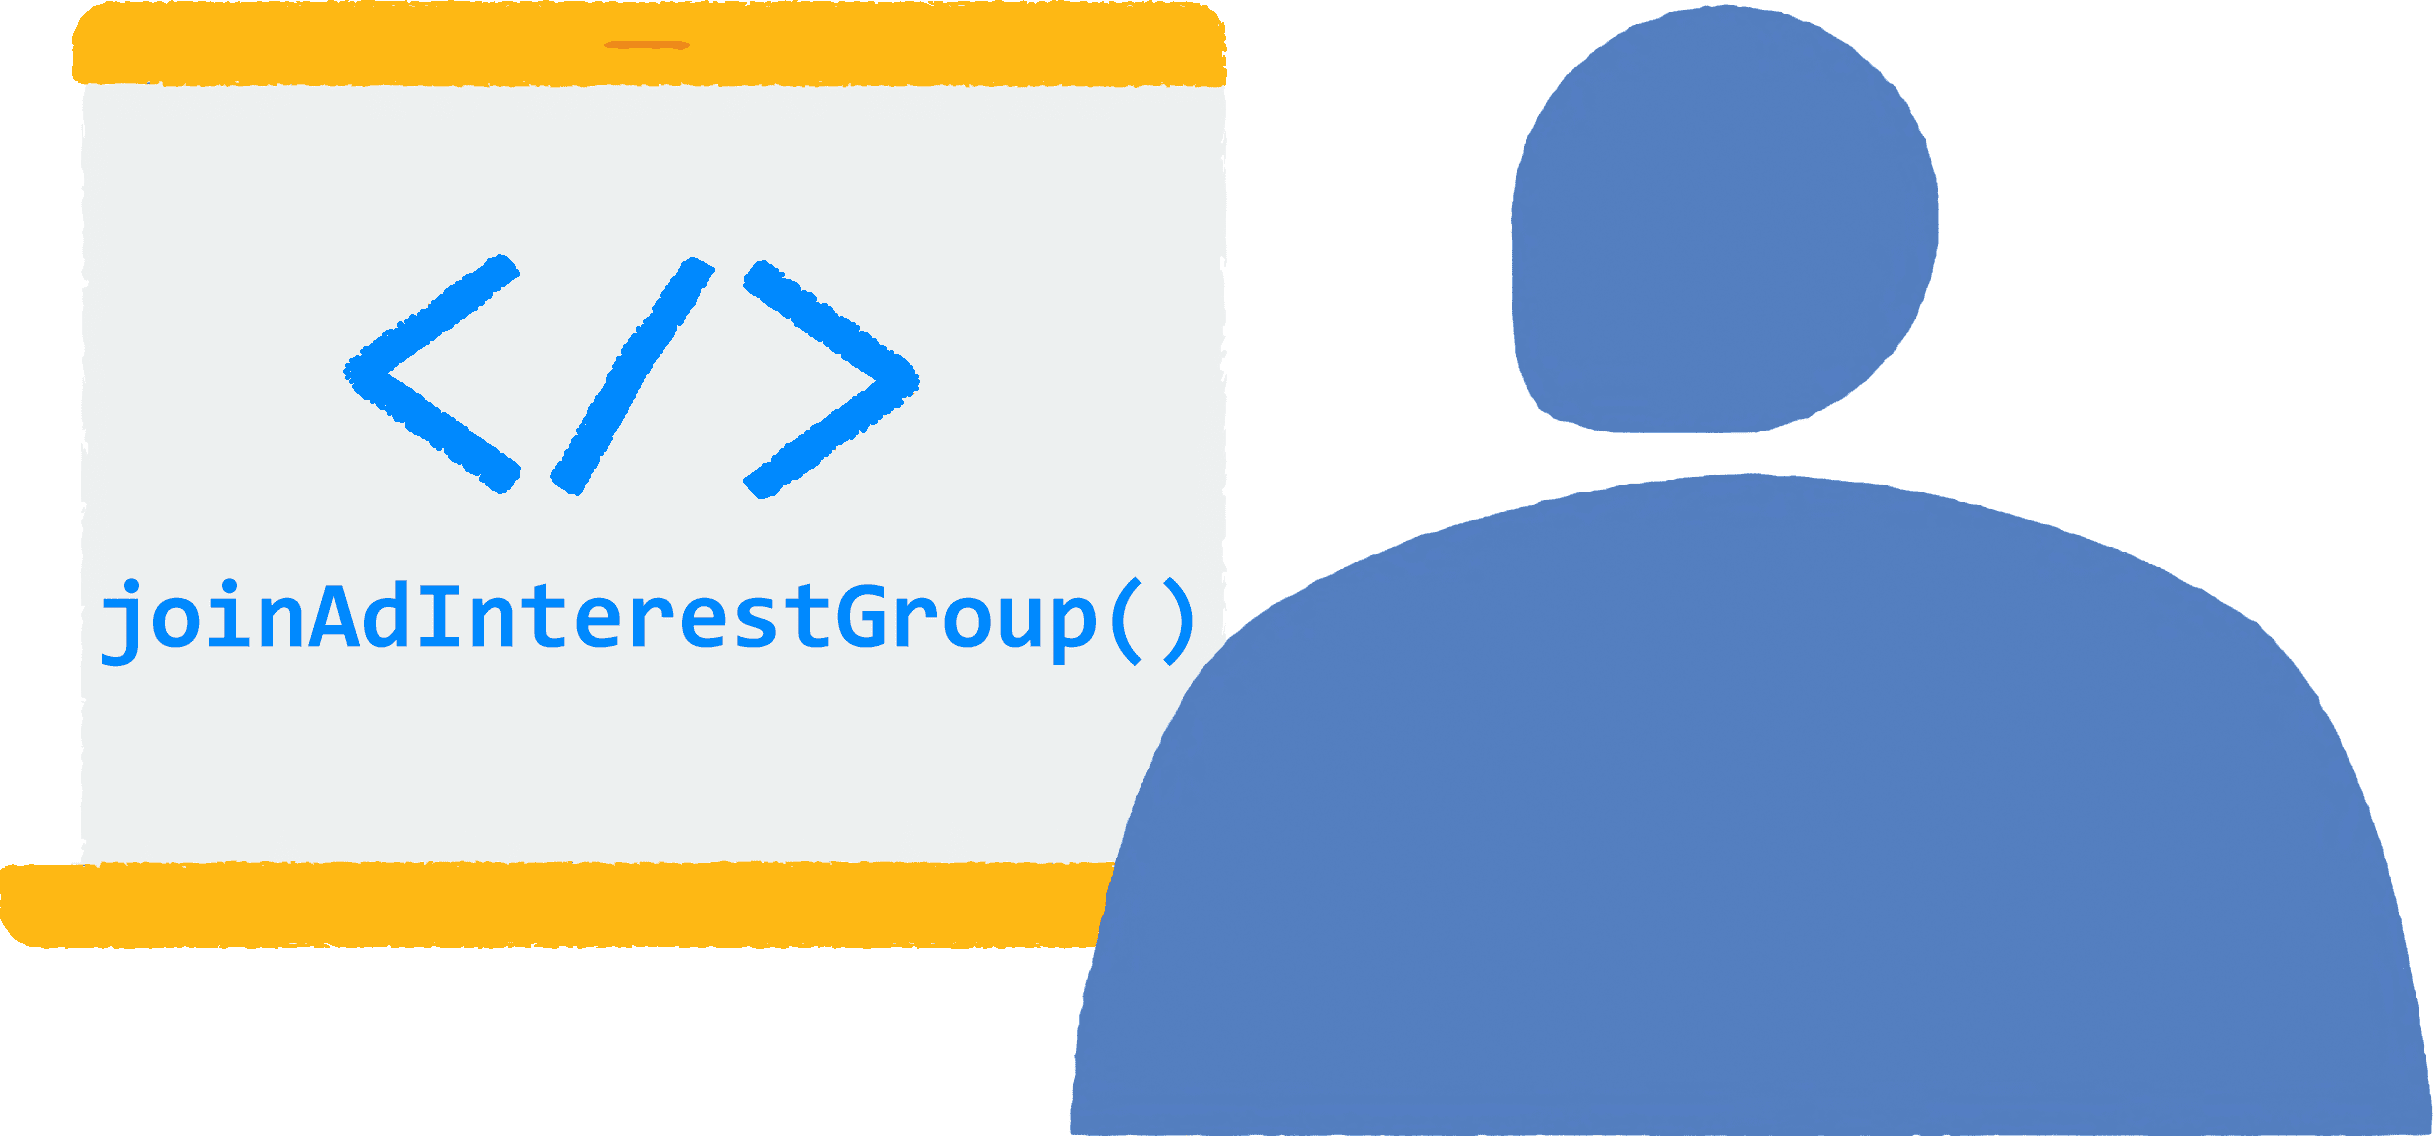 משתמש פותח דפדפן במחשב הנייד ומבקר באתר כלשהו. קוד JavaScript
  להצטרפות לקבוצות של תחומי עניין במודעות פועל בדפדפן.